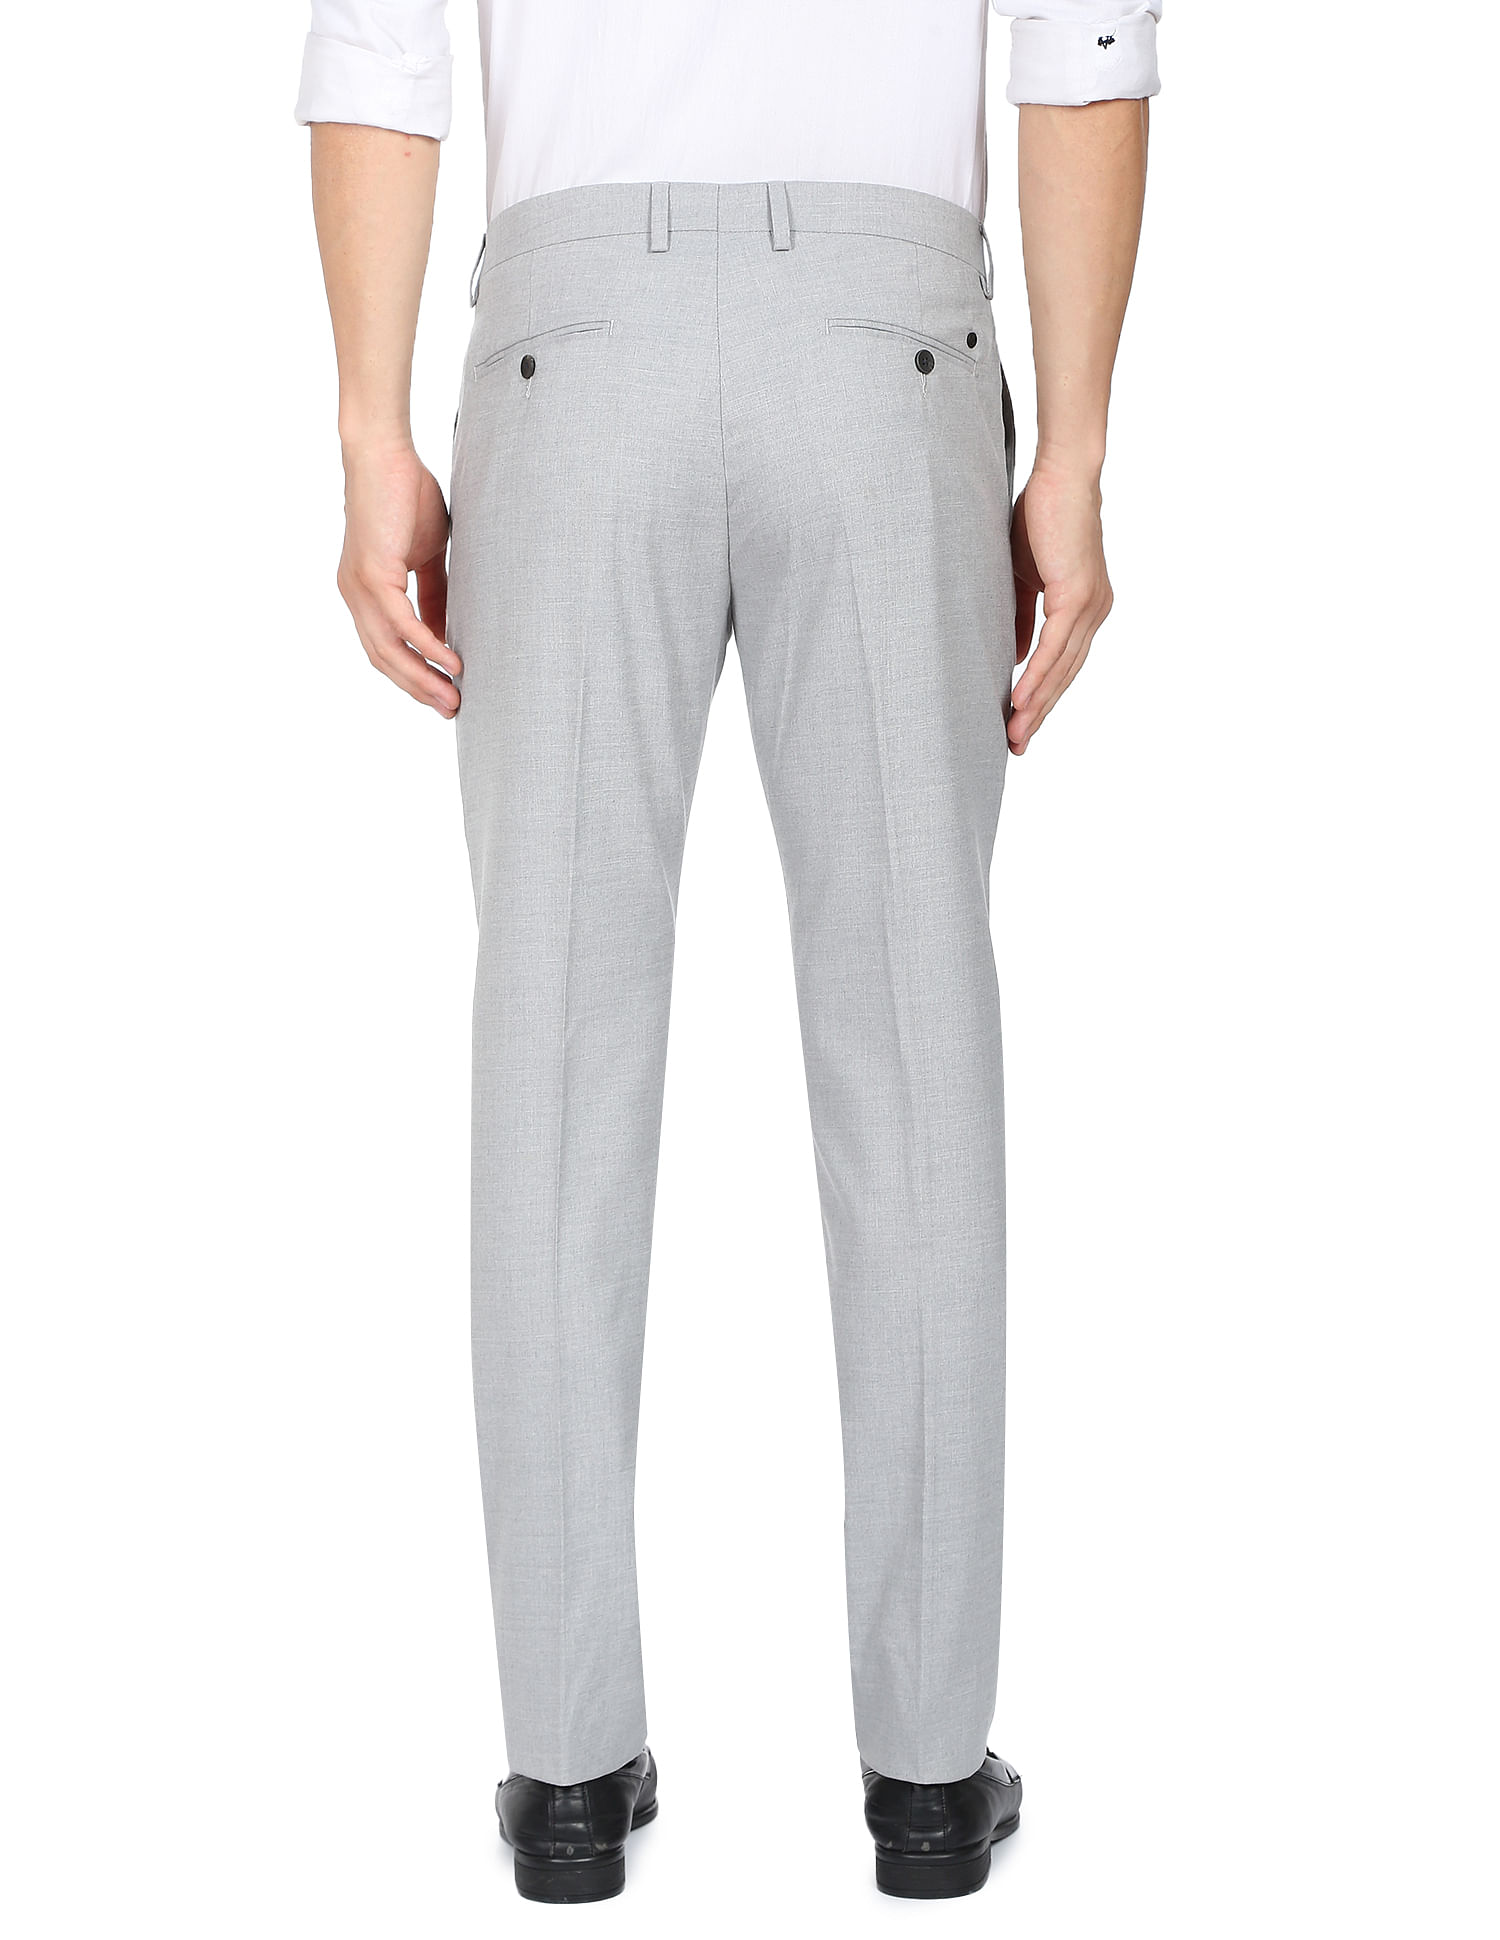 Grey Slim Formal Trousers | Men | George at ASDA